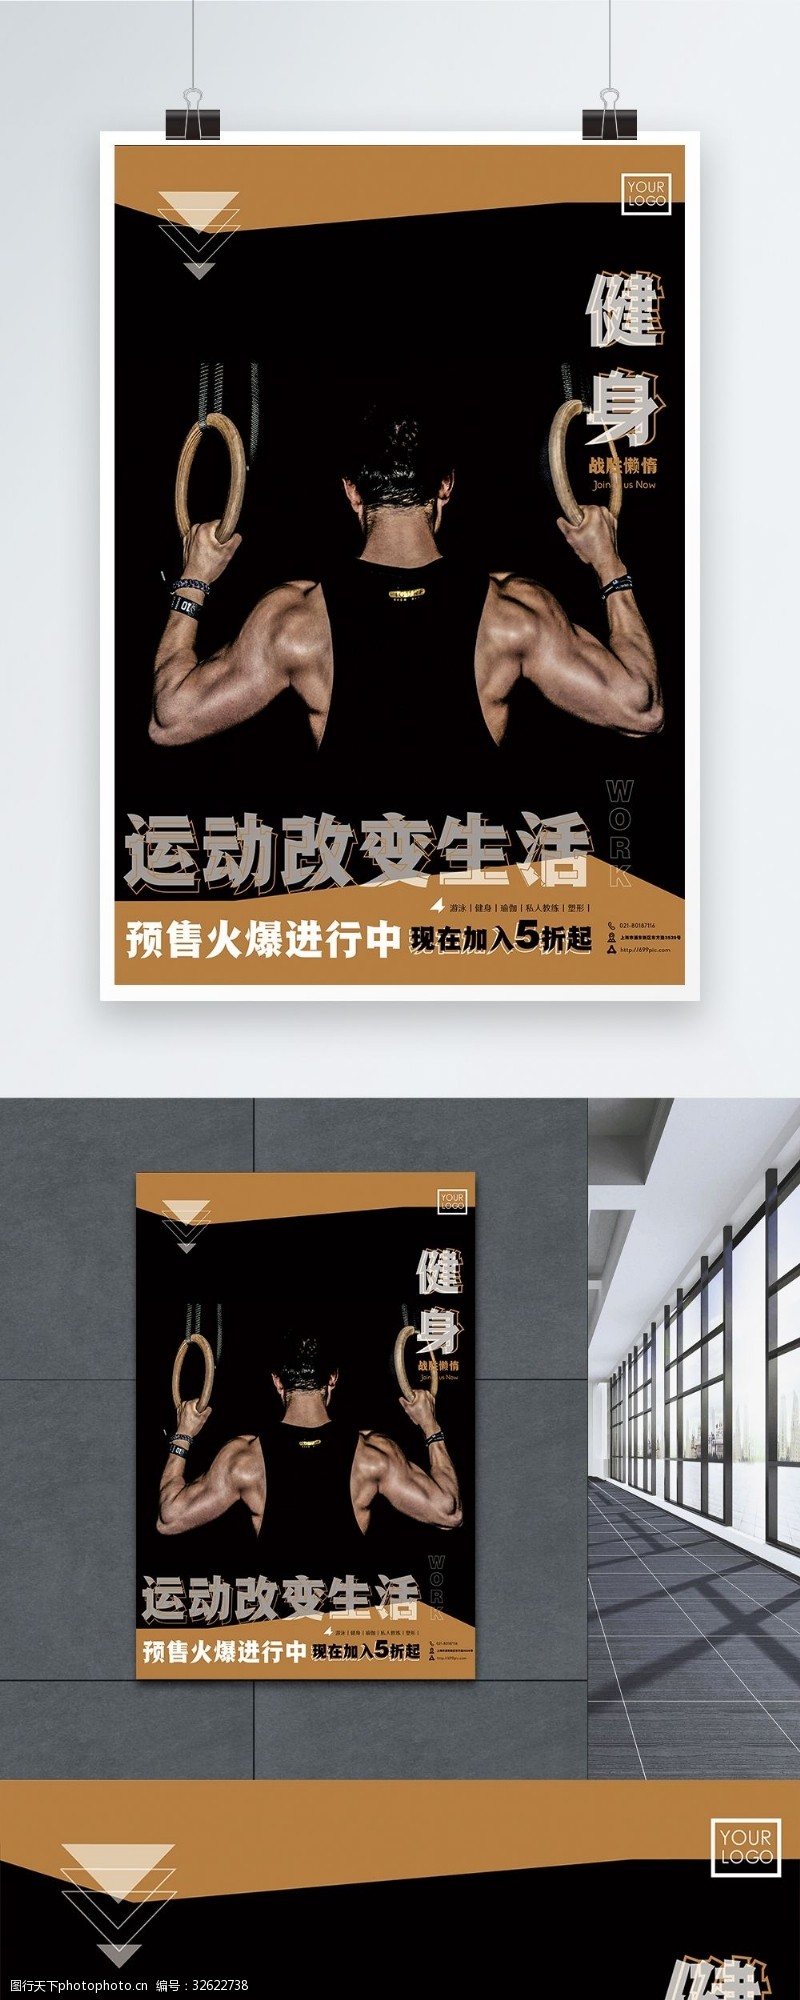 体育比赛运动健身促销海报设计